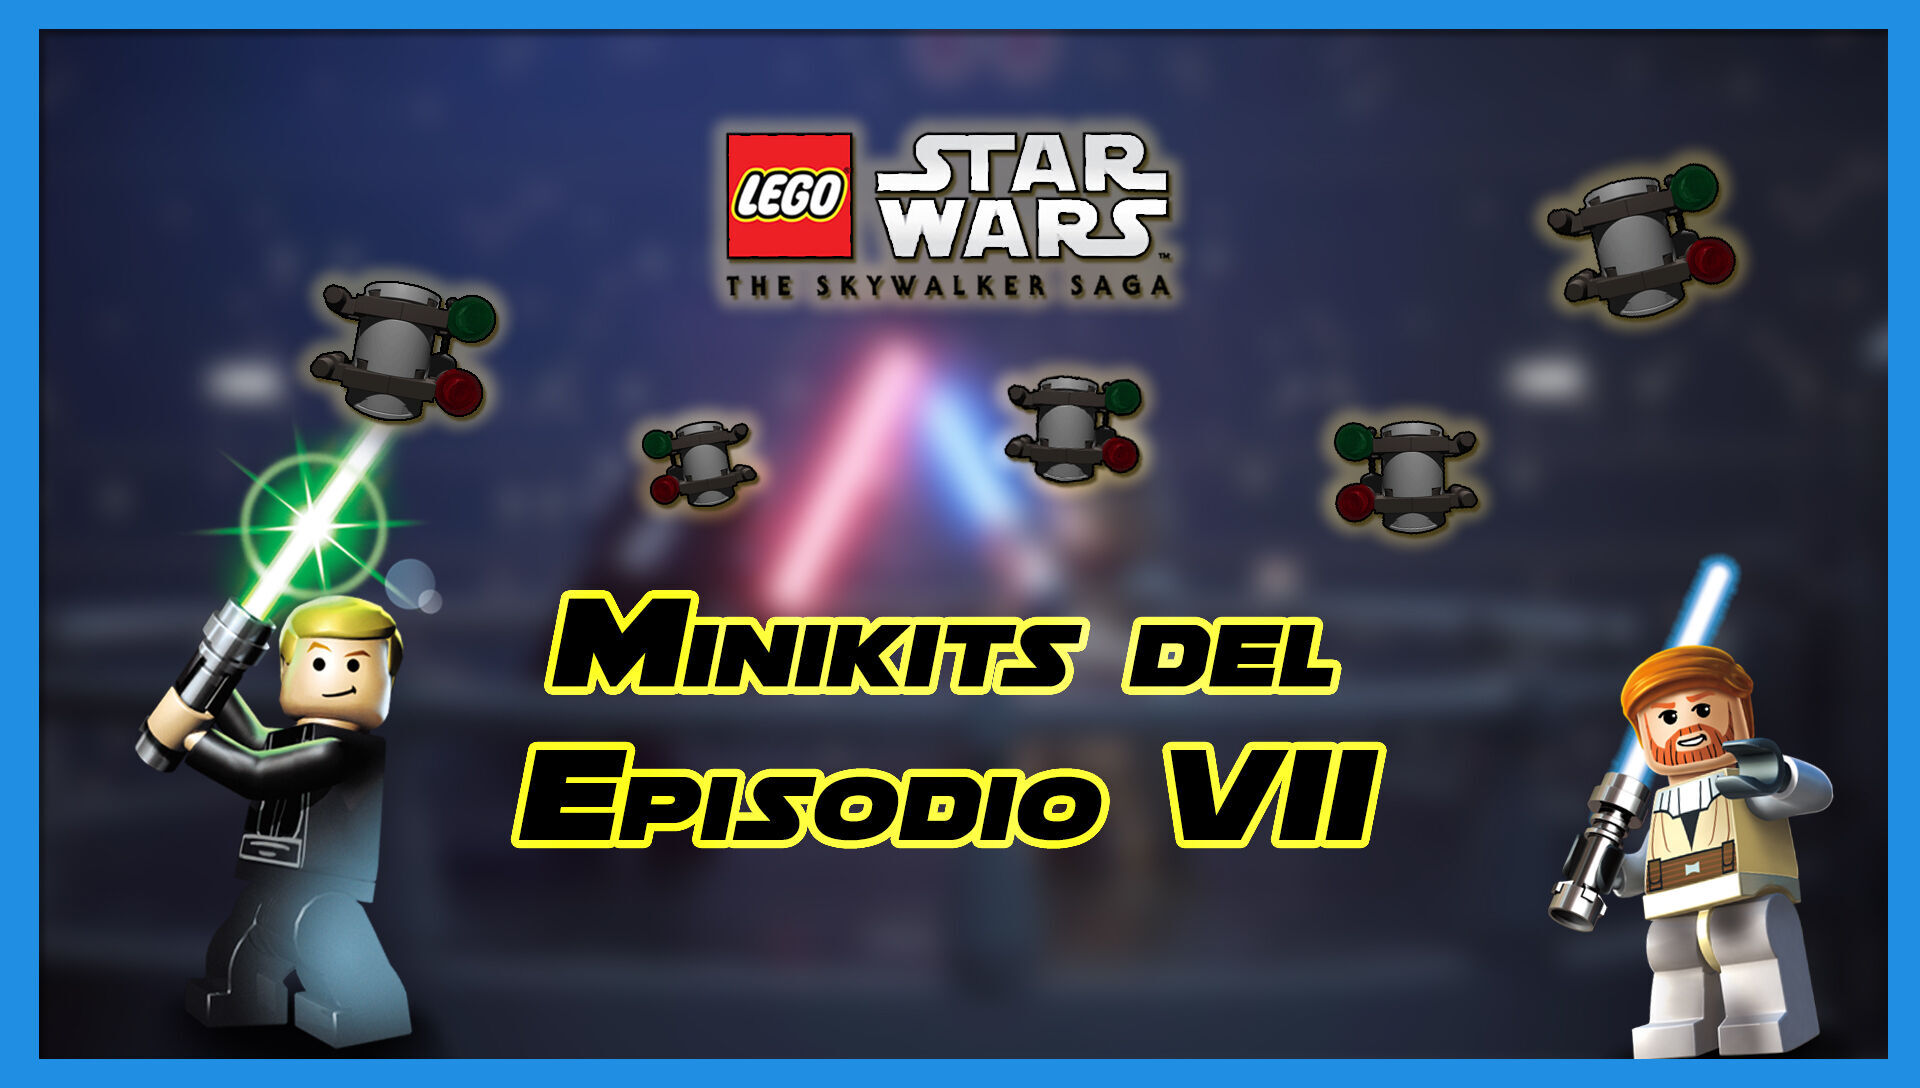 Minikits y desafíos del Episodio VII en LEGO Star Wars Skywalker Saga